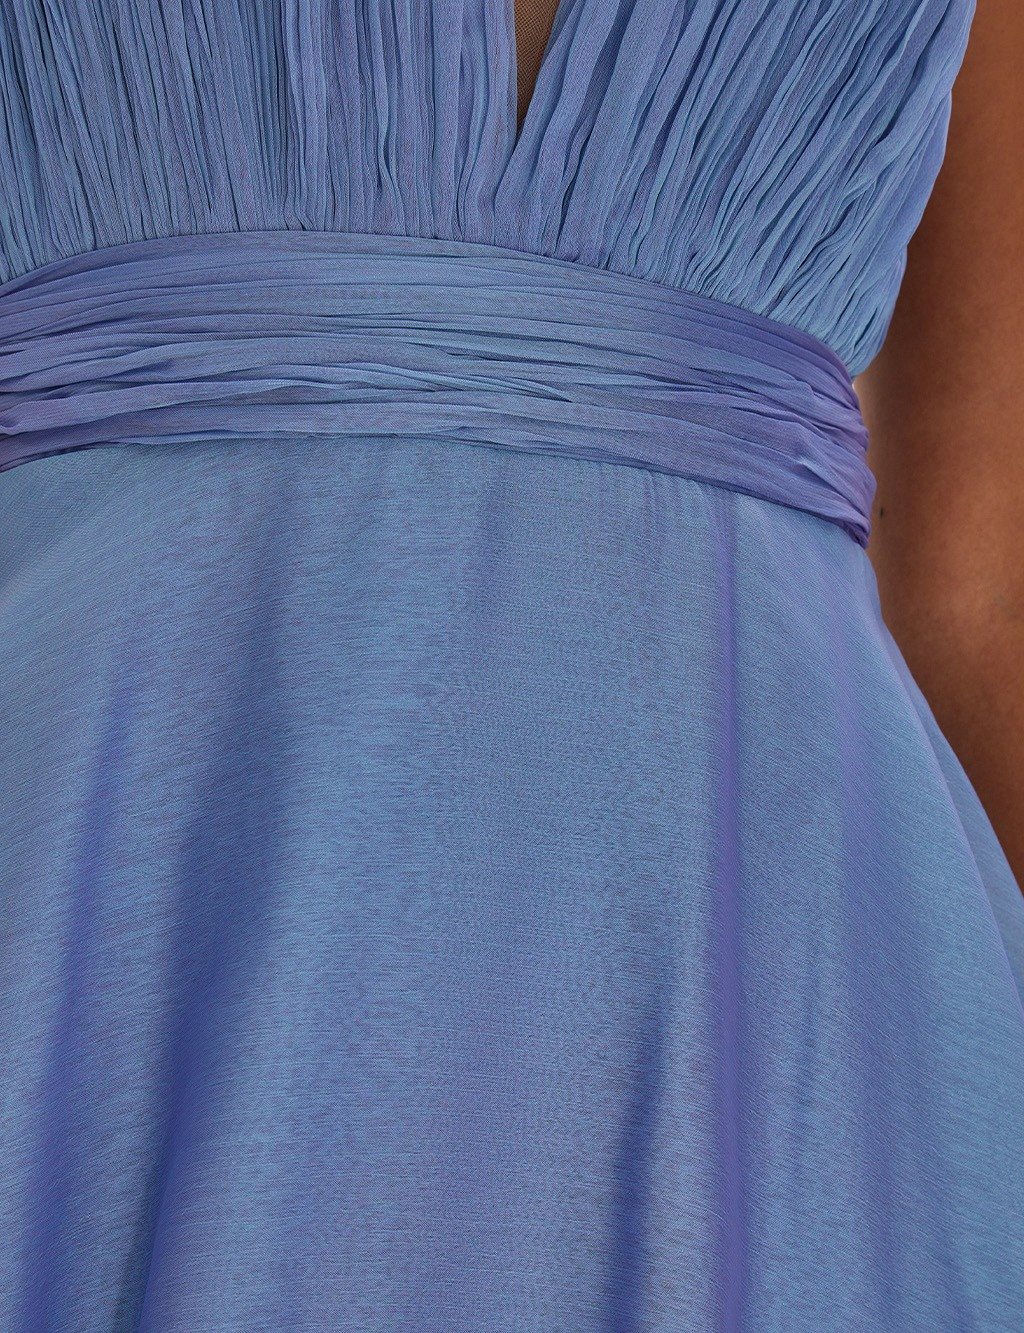 TIARA Deep V-Neck Layered Evening Dress Zen Blue